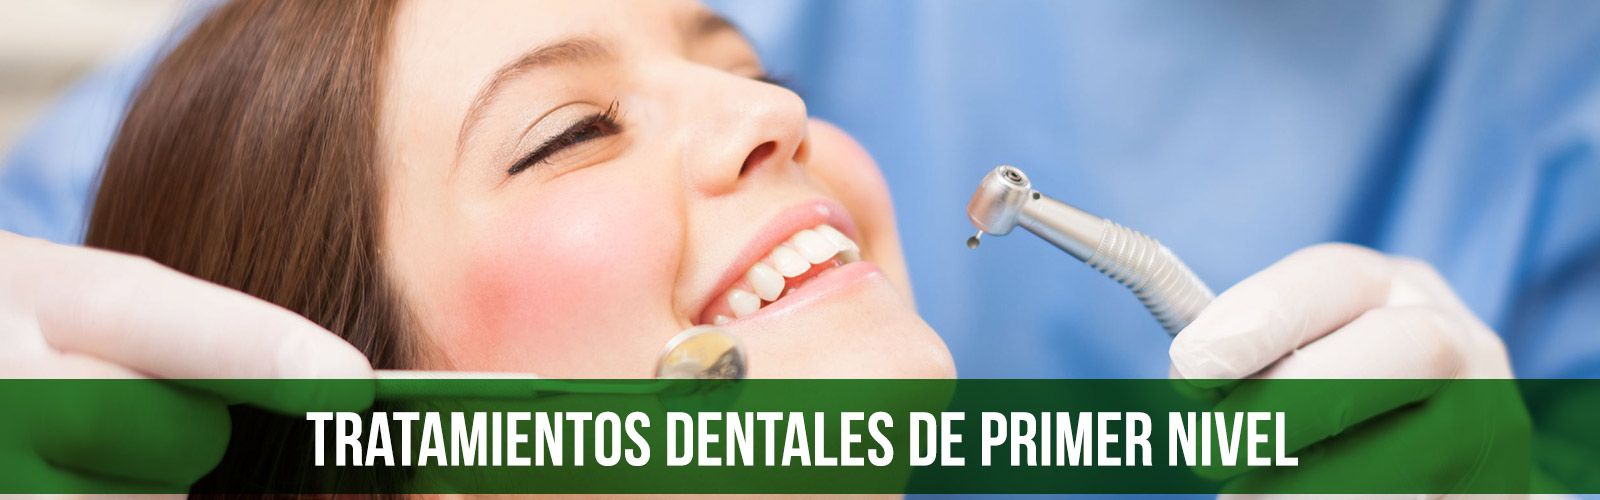 Clínica Dental Toledo 48 banner